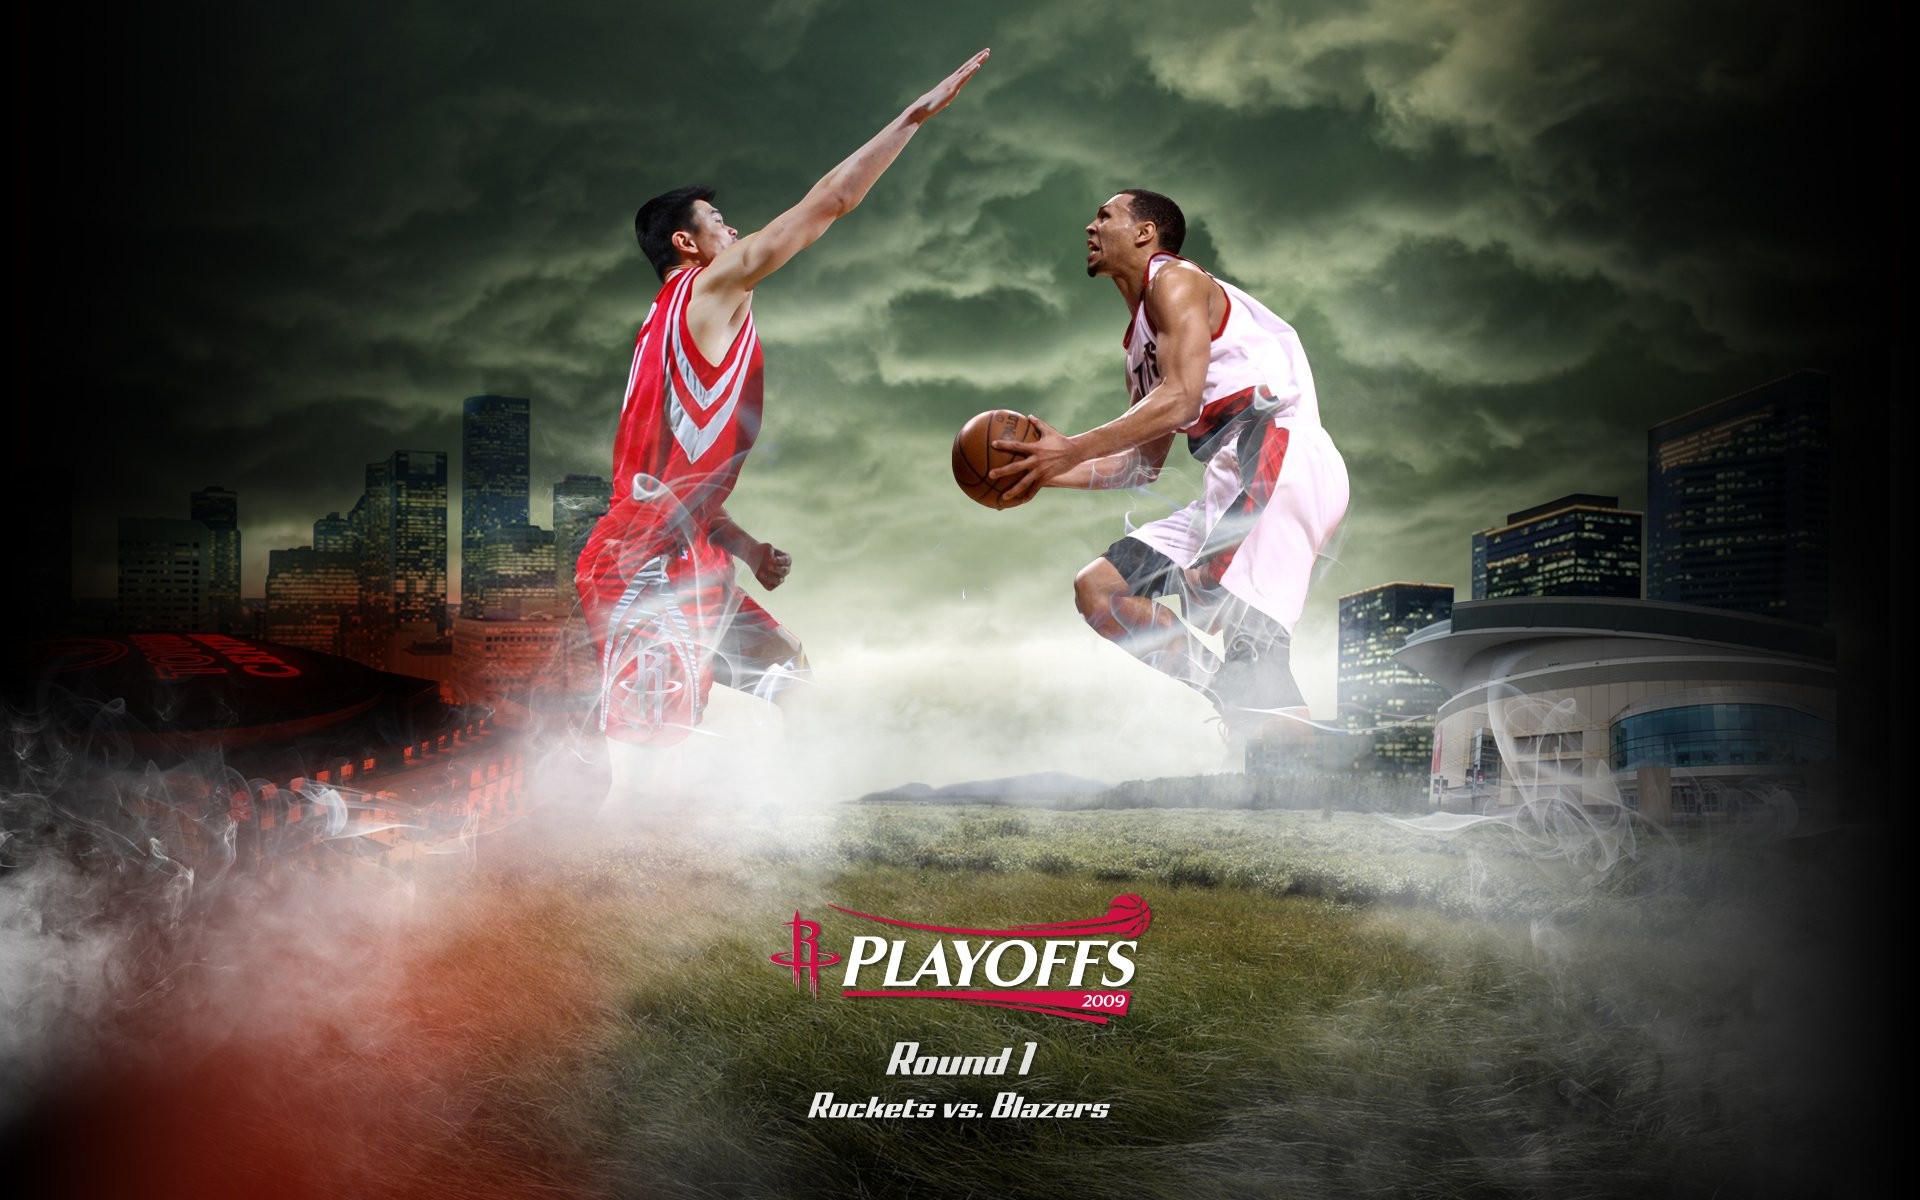 NBA Houston Rockets 2009 fondos de escritorio de los playoffs #1 - 1920x1200